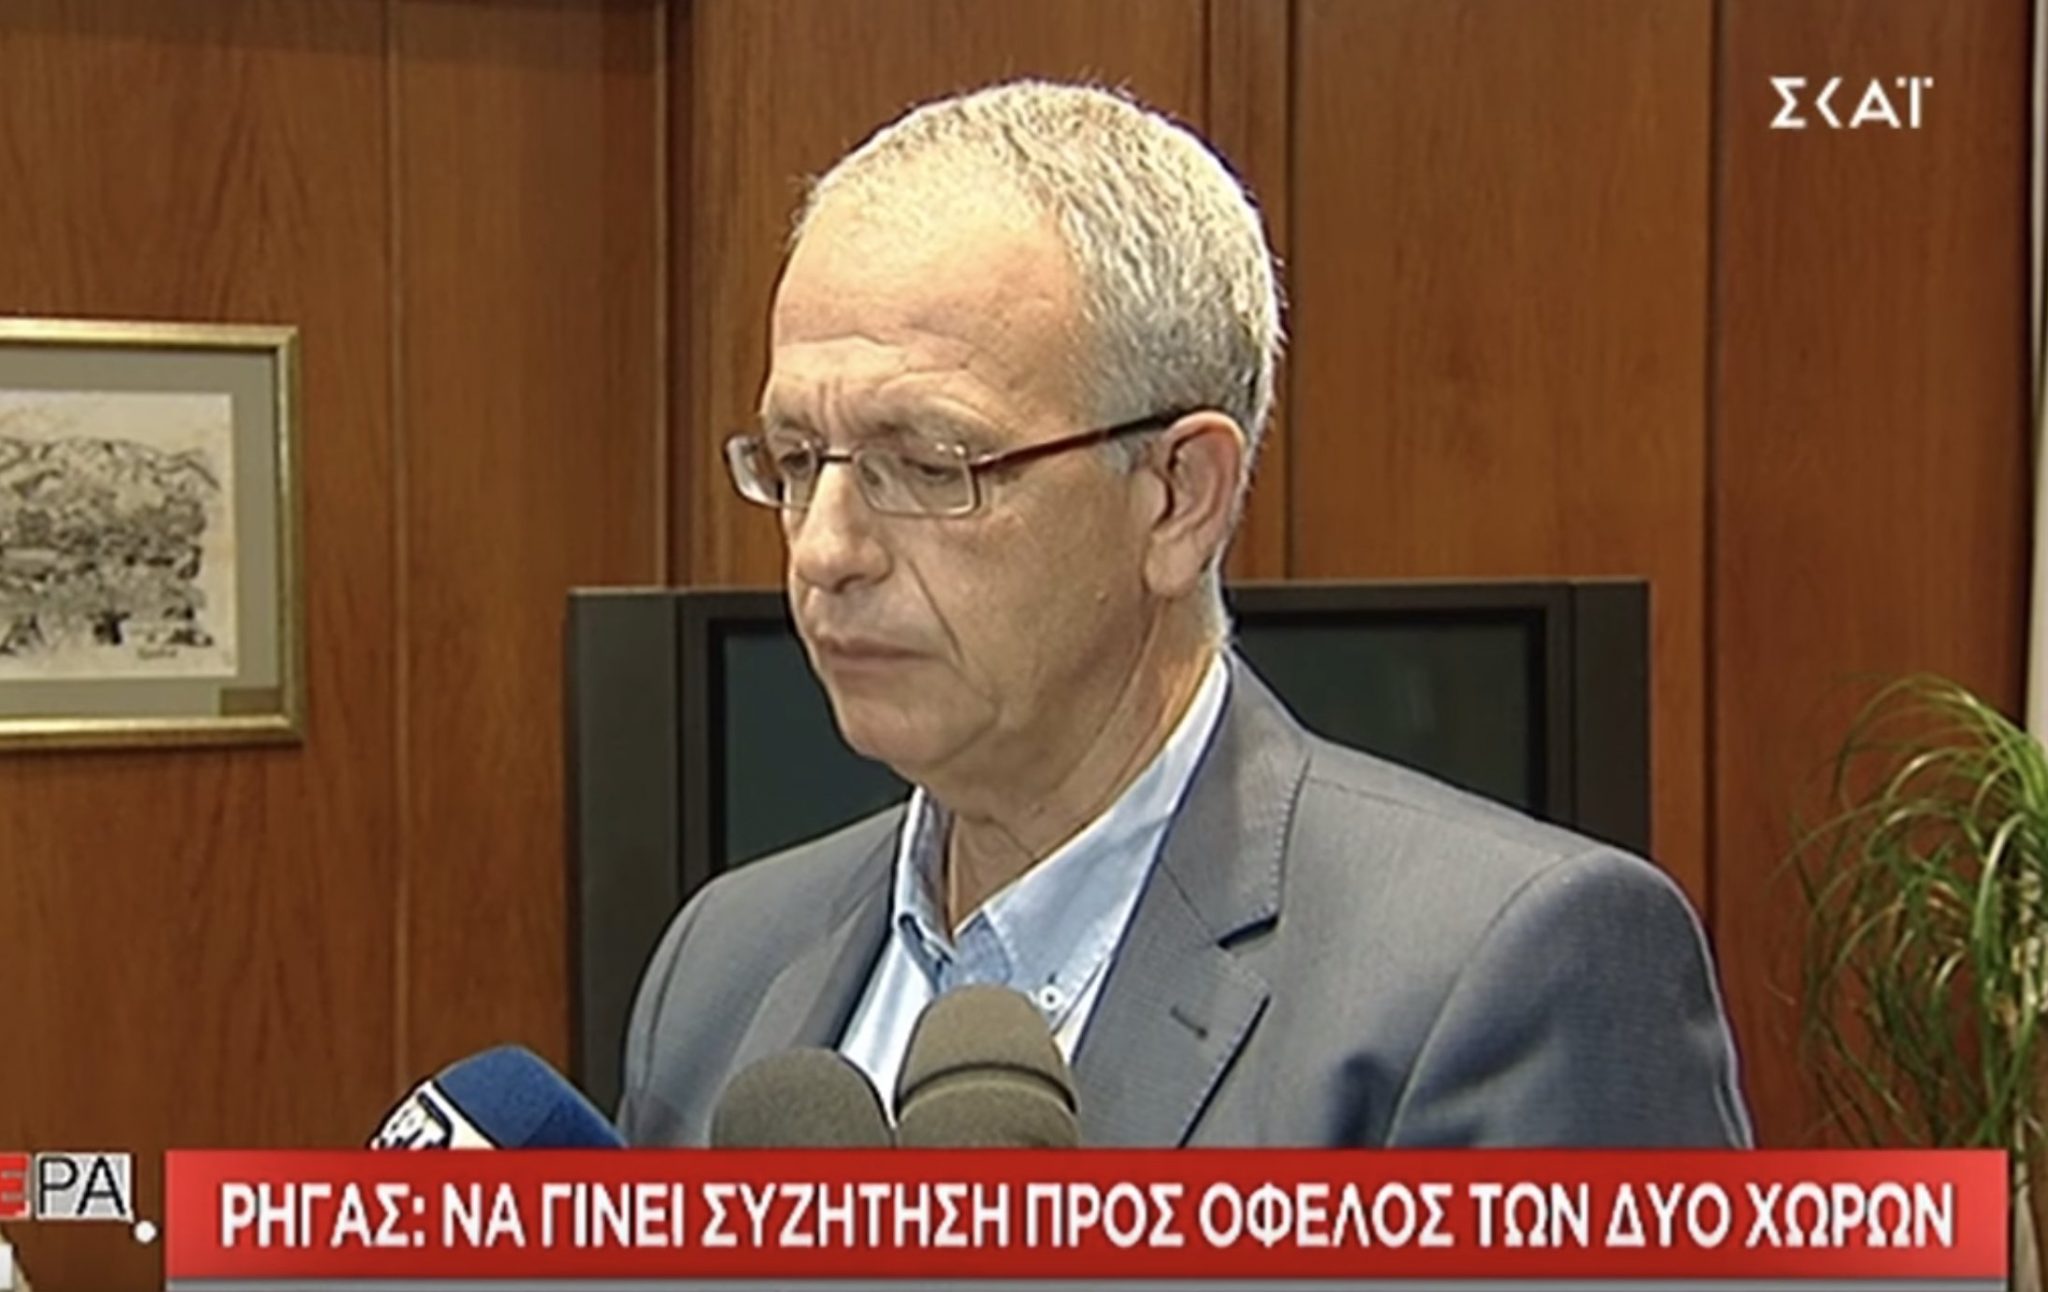 Π. Ρήγας: Η Ελλάδα είναι διατεθειμένη να συζητήσει την υφαλοκρηπίδα με την Τουρκία.